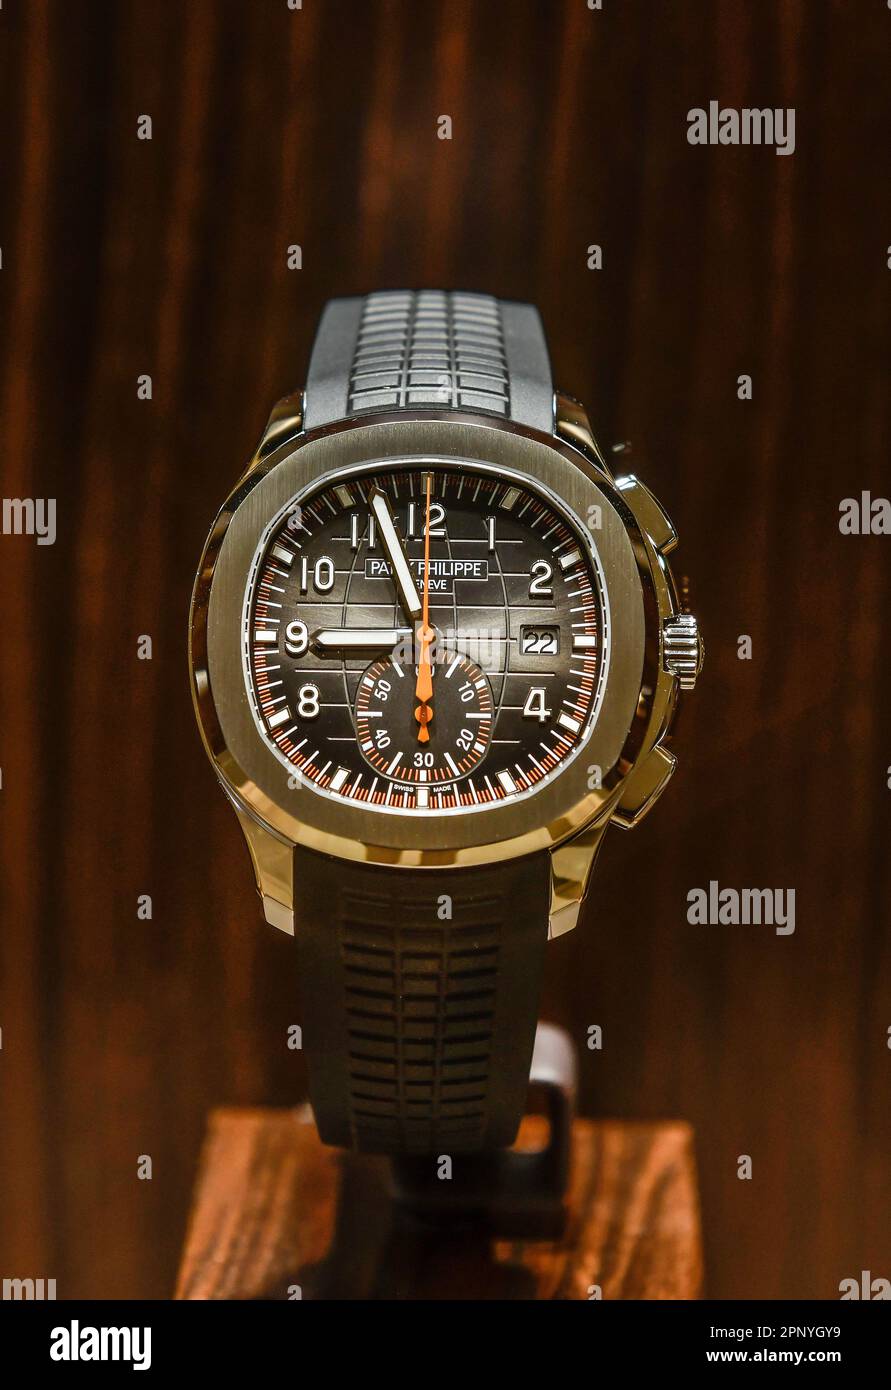 BANGKOK, THAÏLANDE - 12 avril 2022 :Patek Philippe Aquanaut 5968A chronographe en acier inoxydable montre suisse exposée dans un magasin Banque D'Images